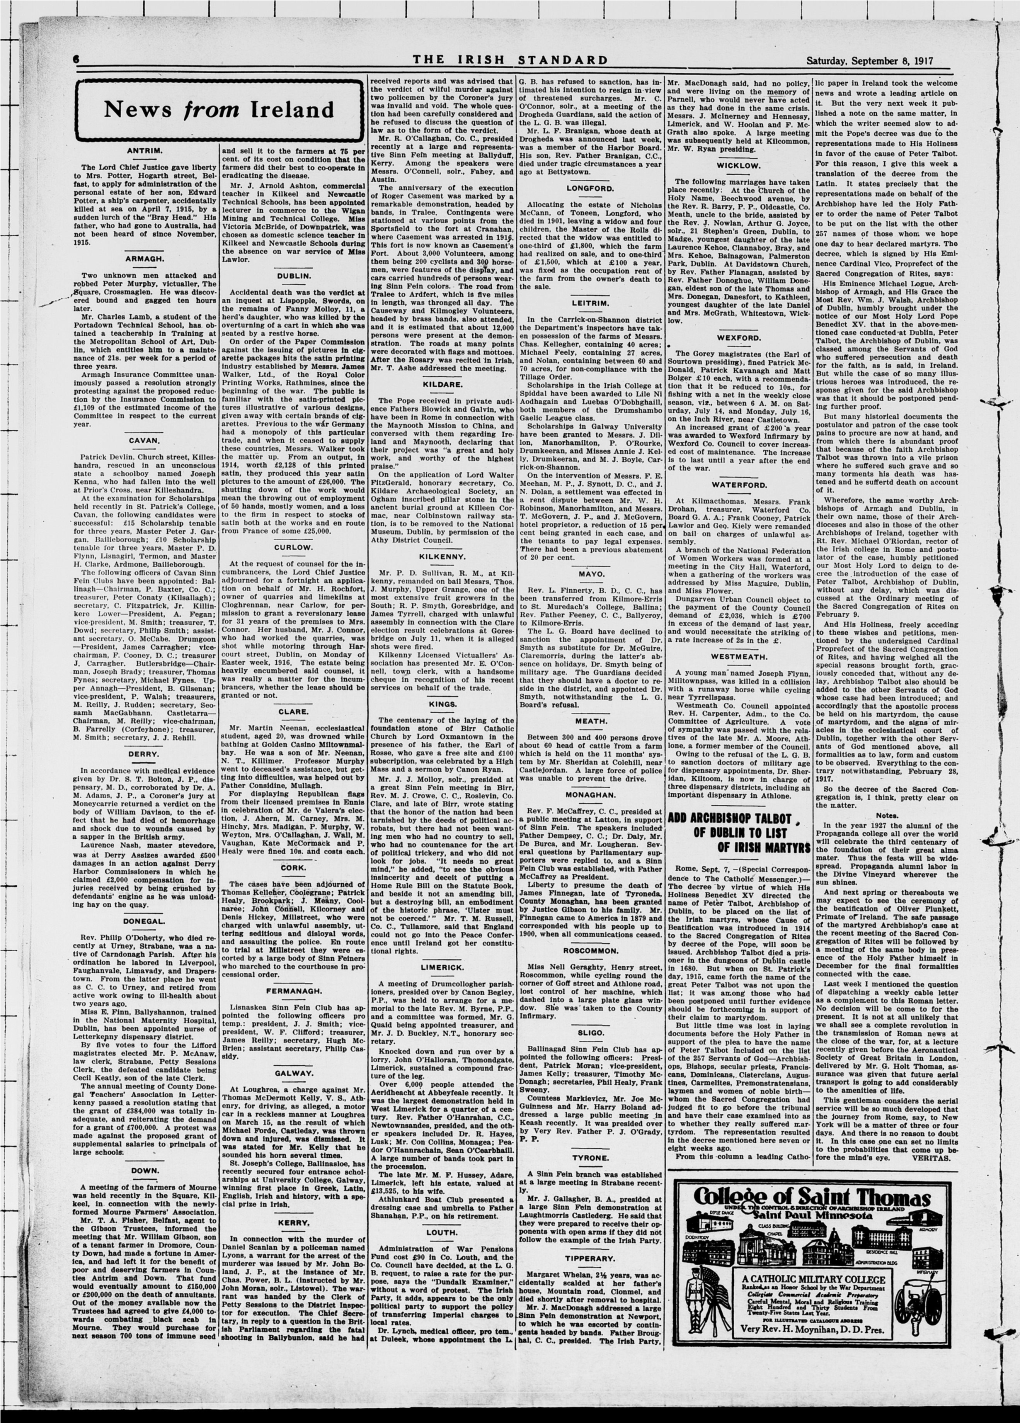 The Irish Standard. (Minneapolis, Minn. ; St. Paul, Minn.), 1917-09-08, [P ]